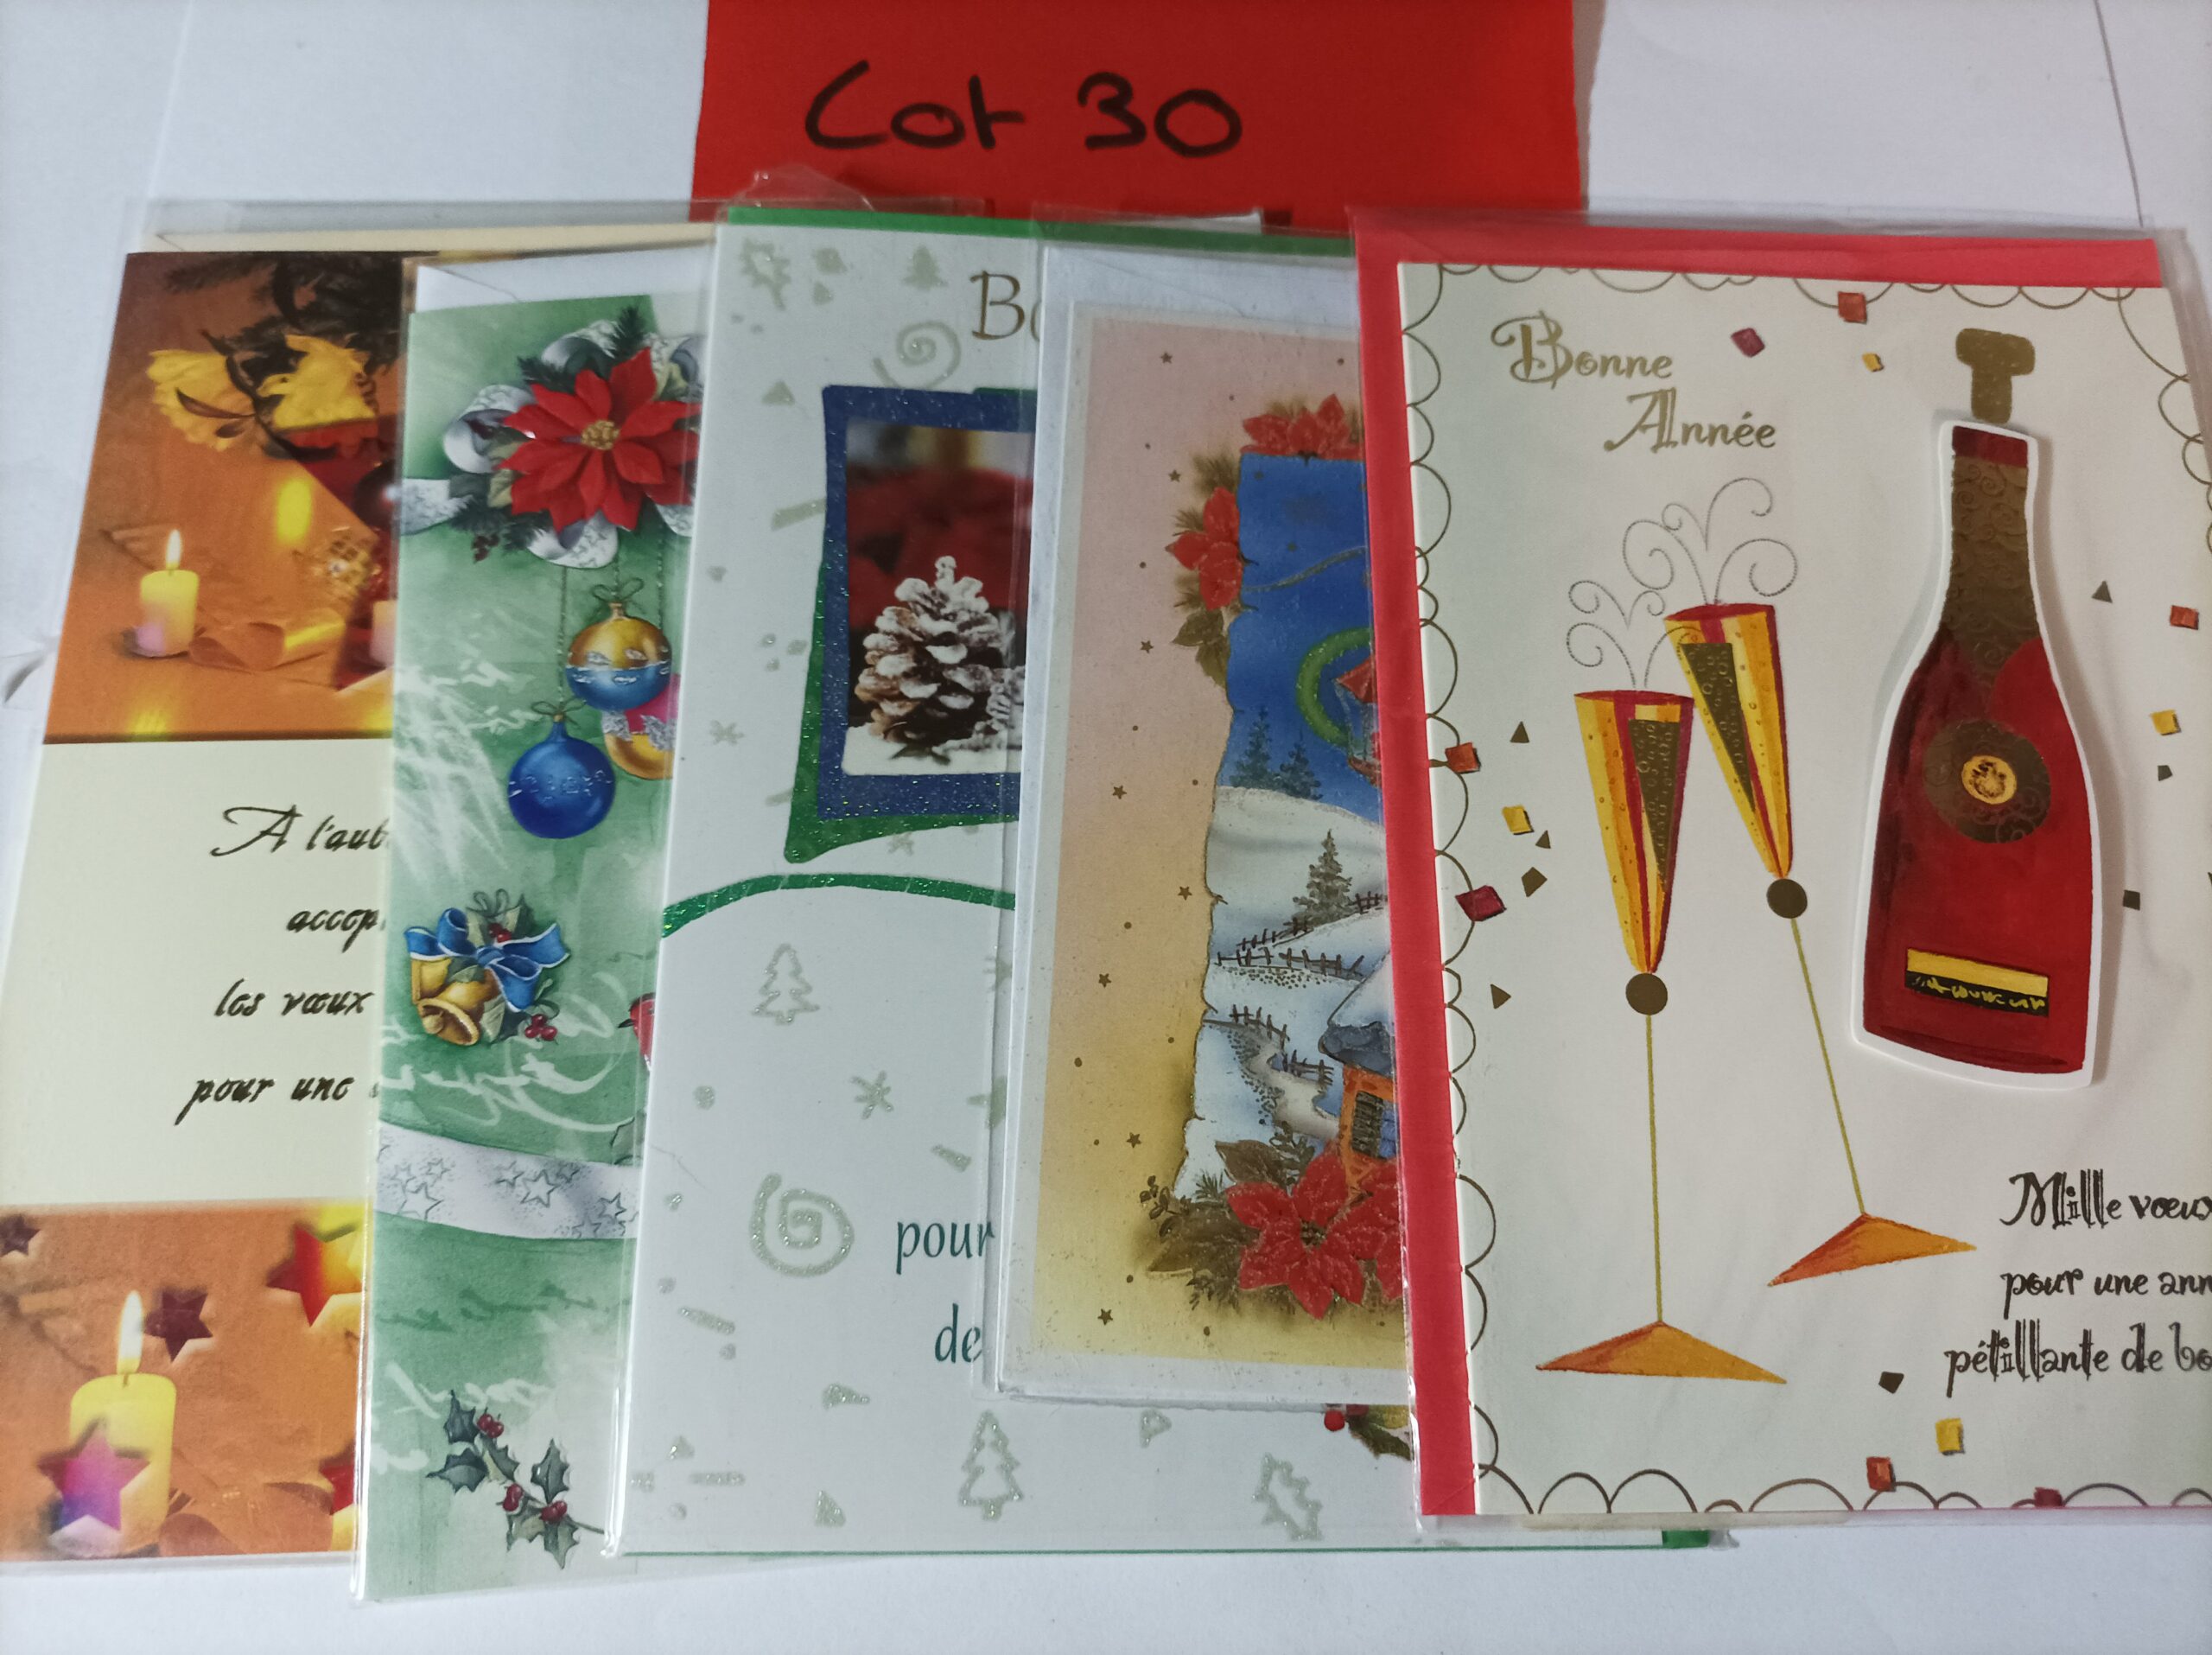 Lot de 5 cartes postales + enveloppes bonne année (lot 30)